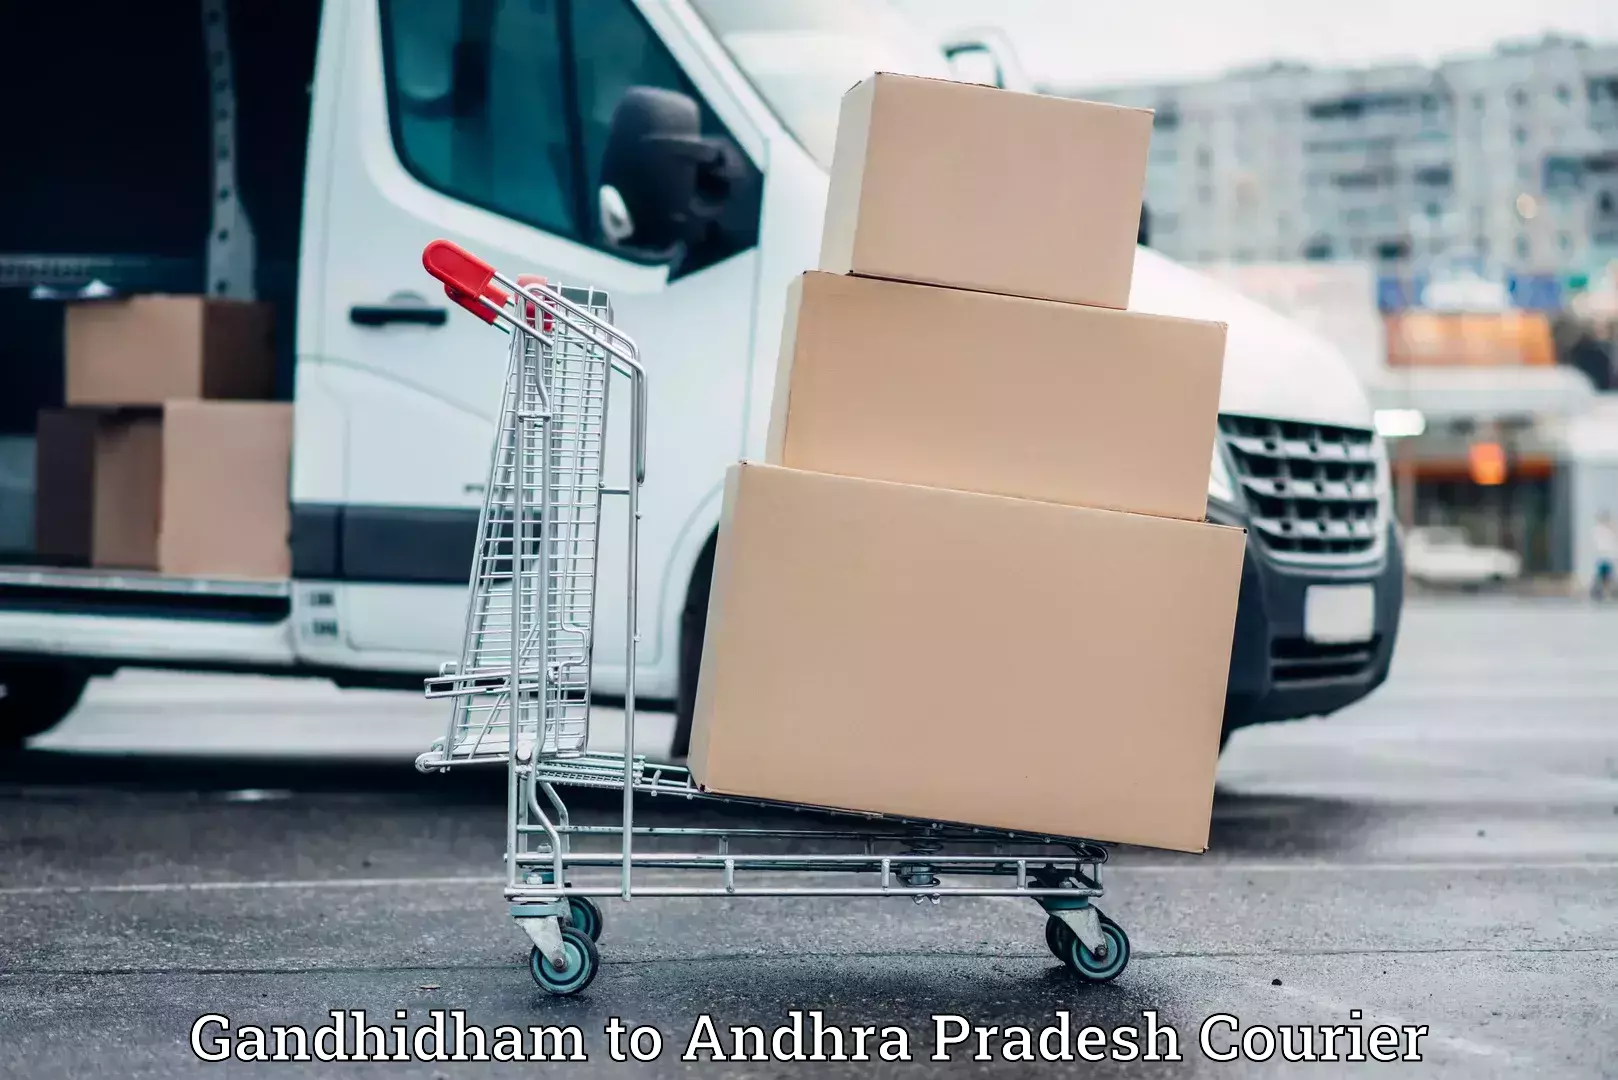 Stress-free furniture moving in Gandhidham to Andhra Pradesh